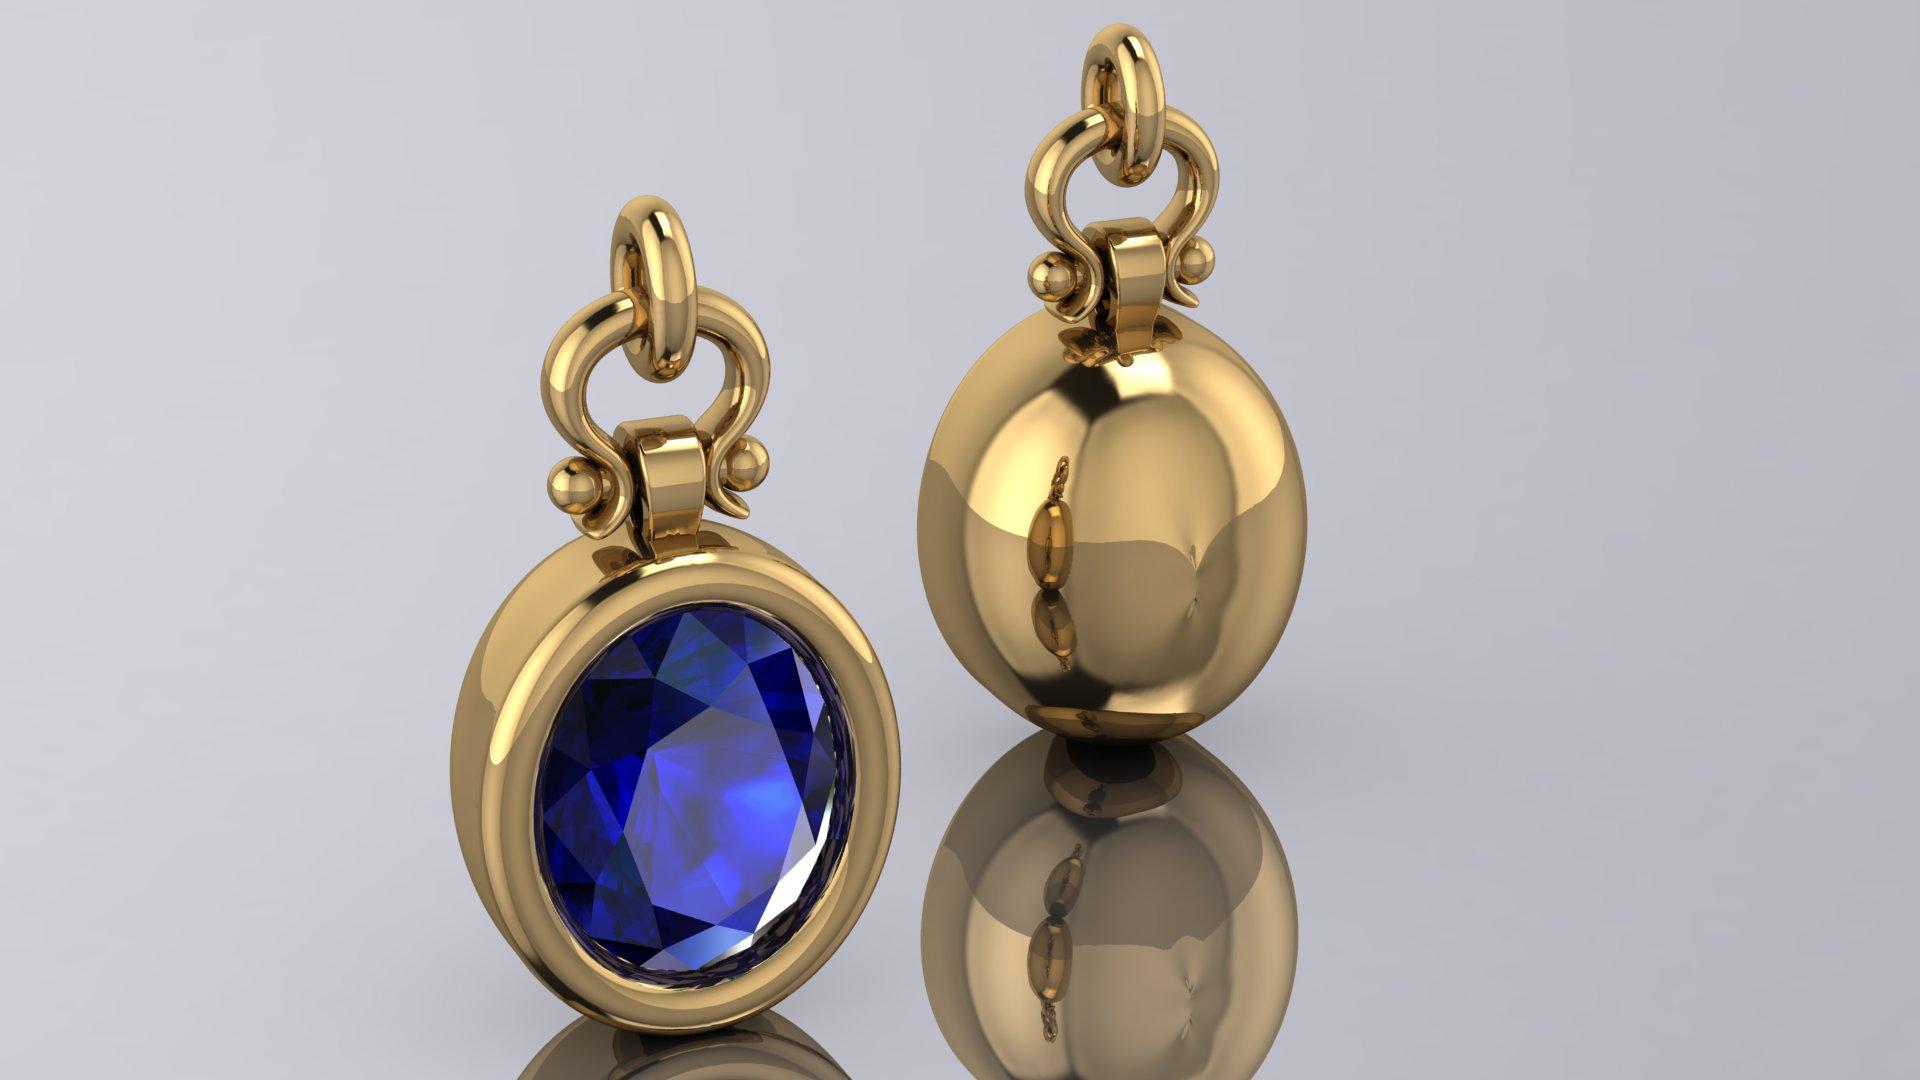 Oval Cut Berberyn Certified 3.08 Carat Oval Blue Sapphire Custom Pendant Necklace in 18k For Sale